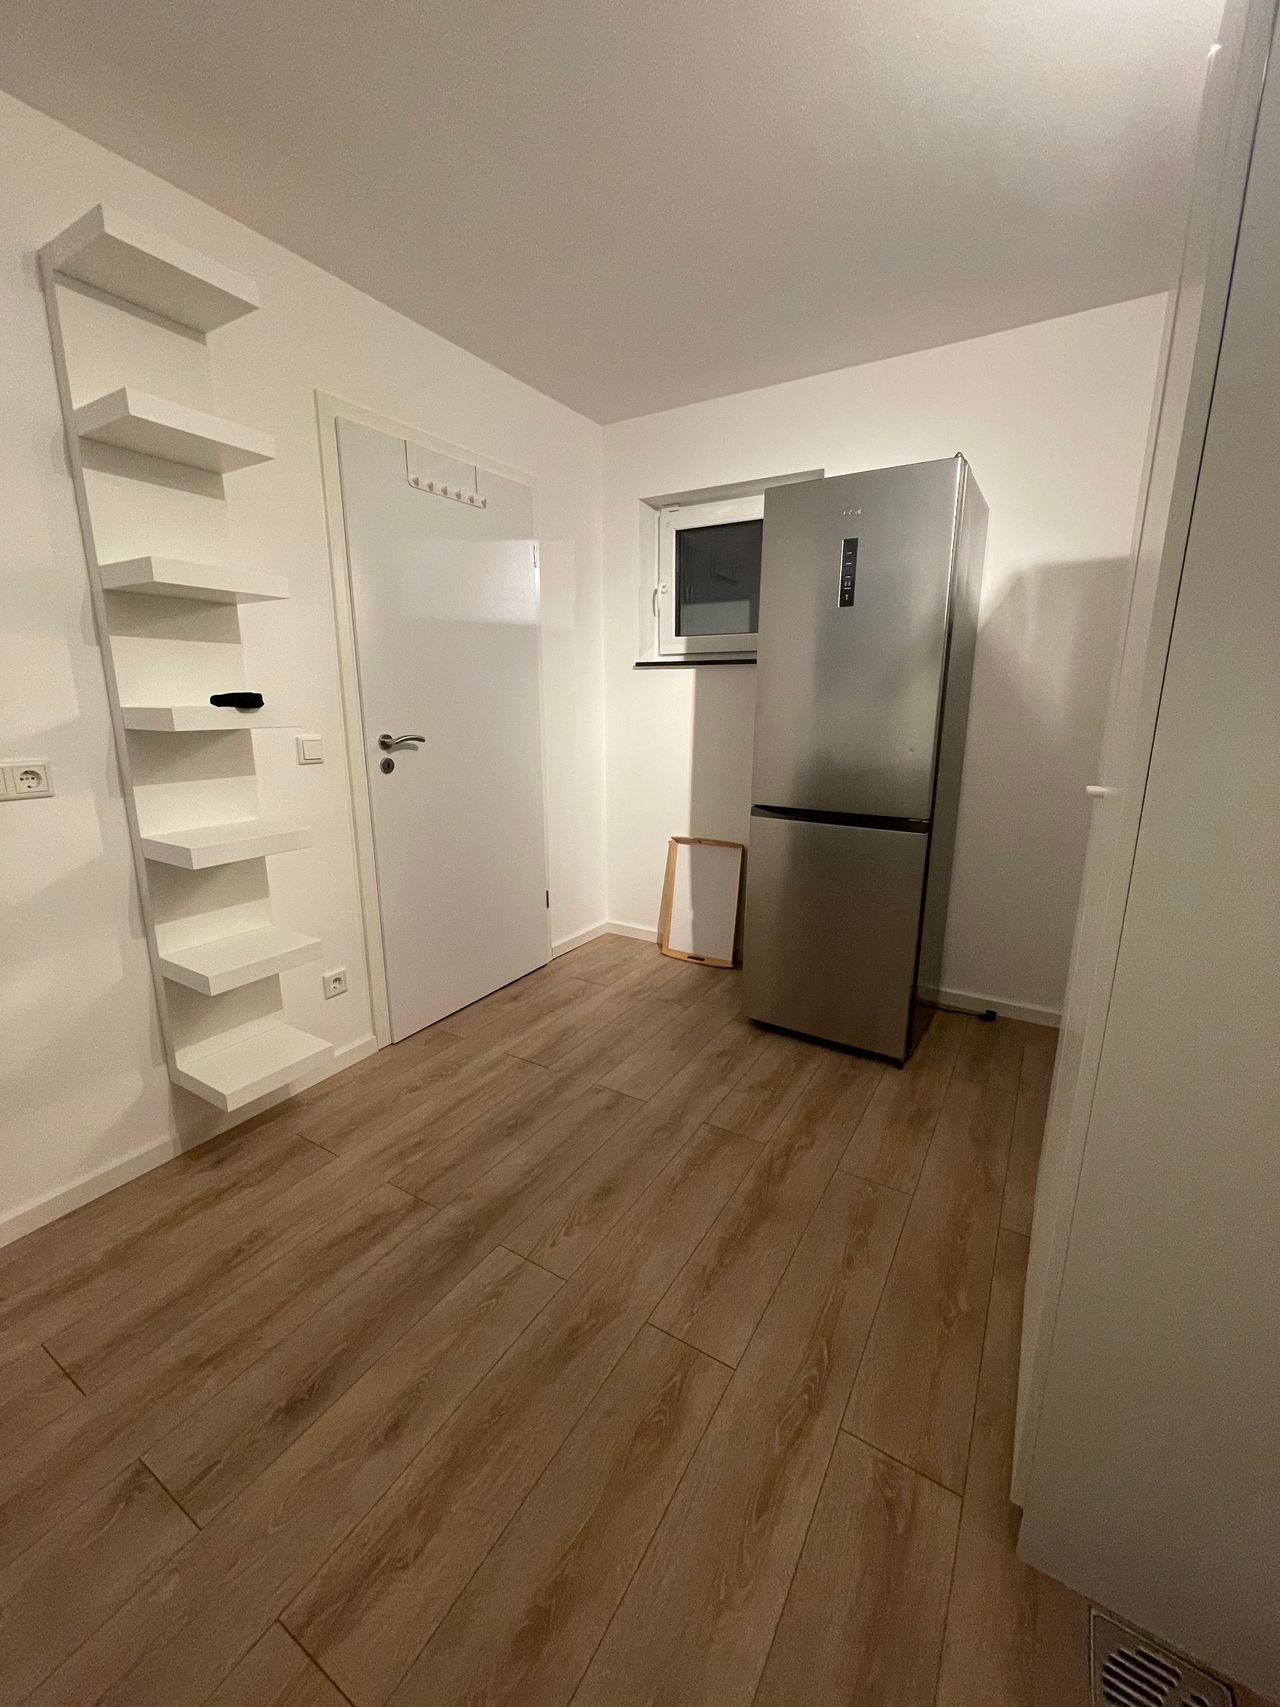 Perfect apartment (Troisdorf)